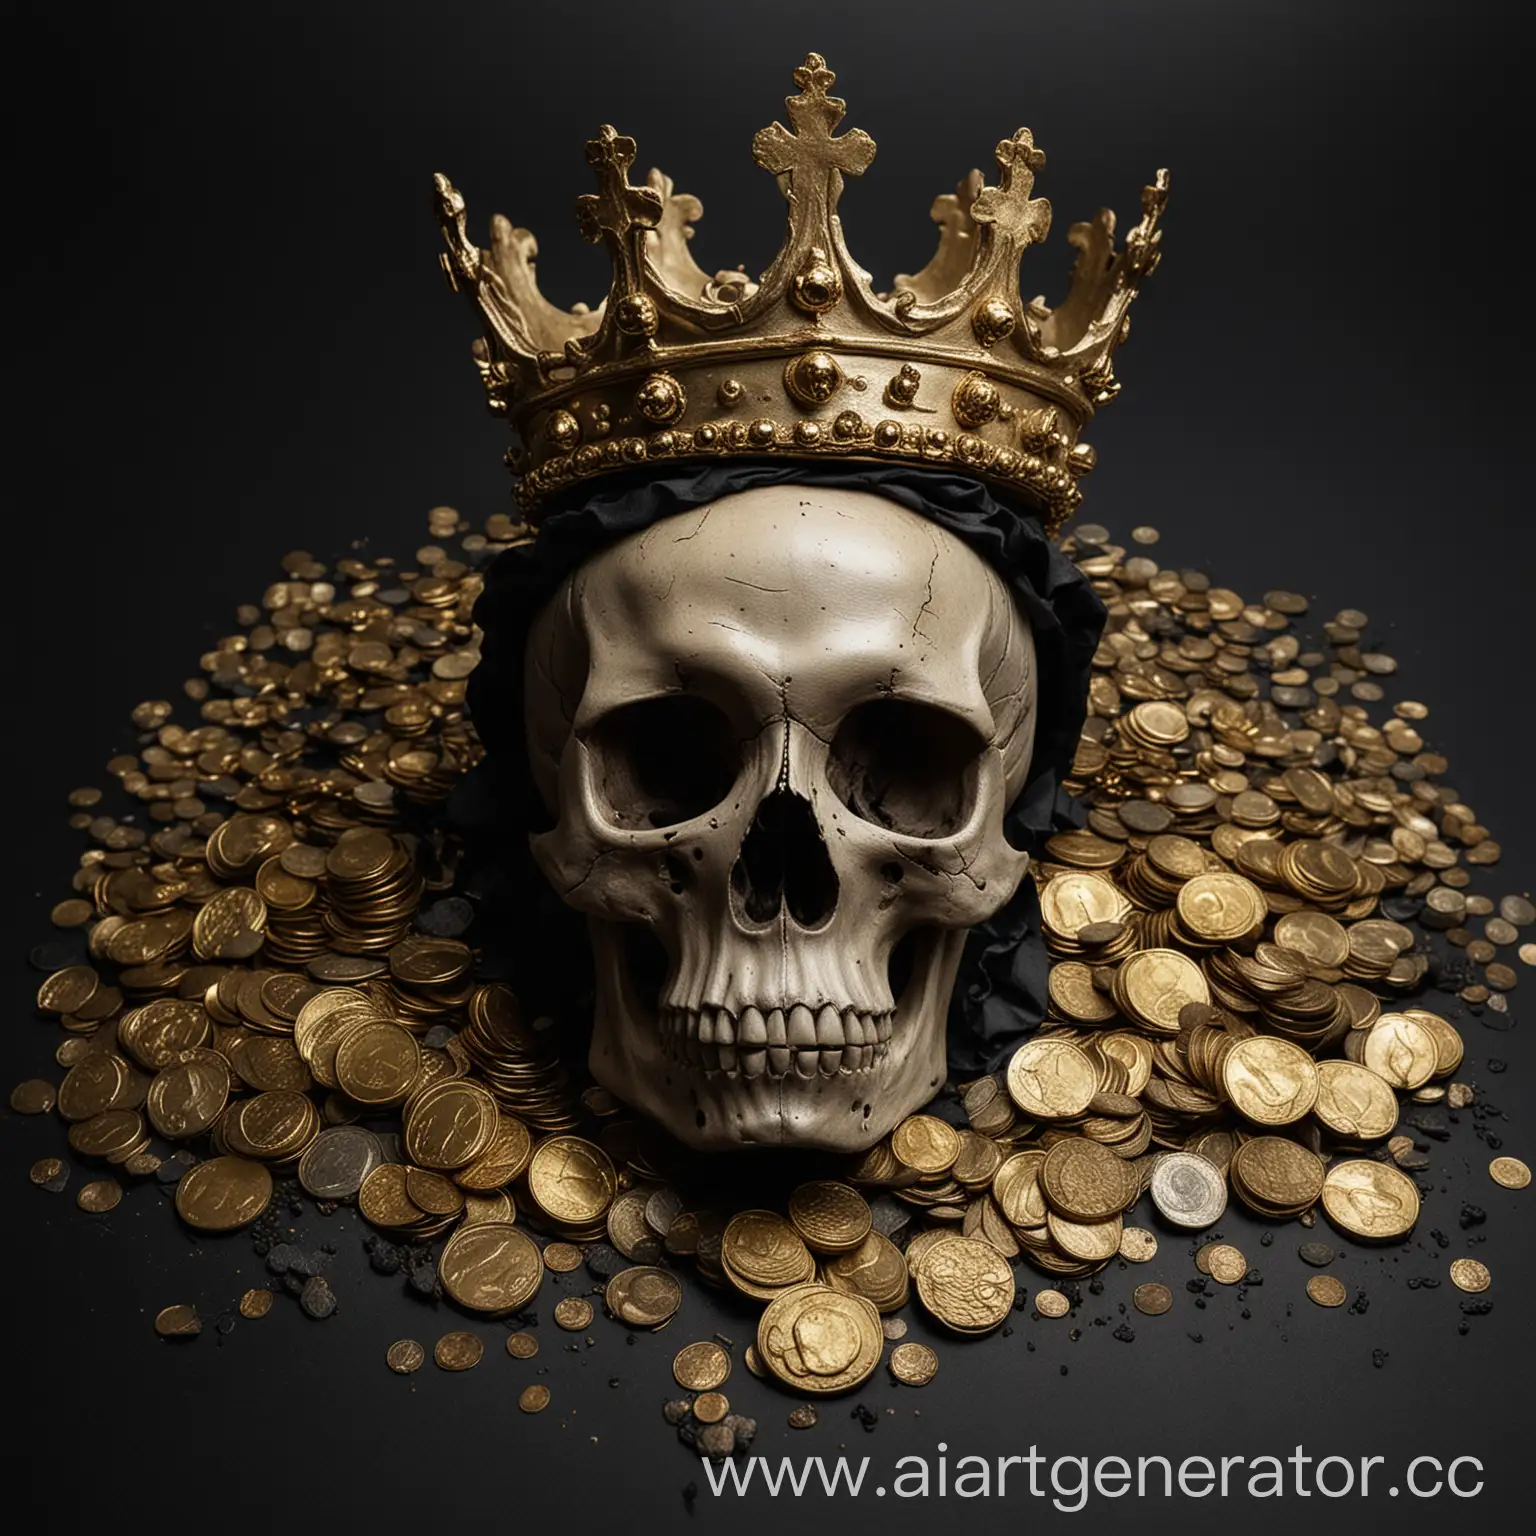 череп в короне с золотыми монетами под ним, на черном фоне